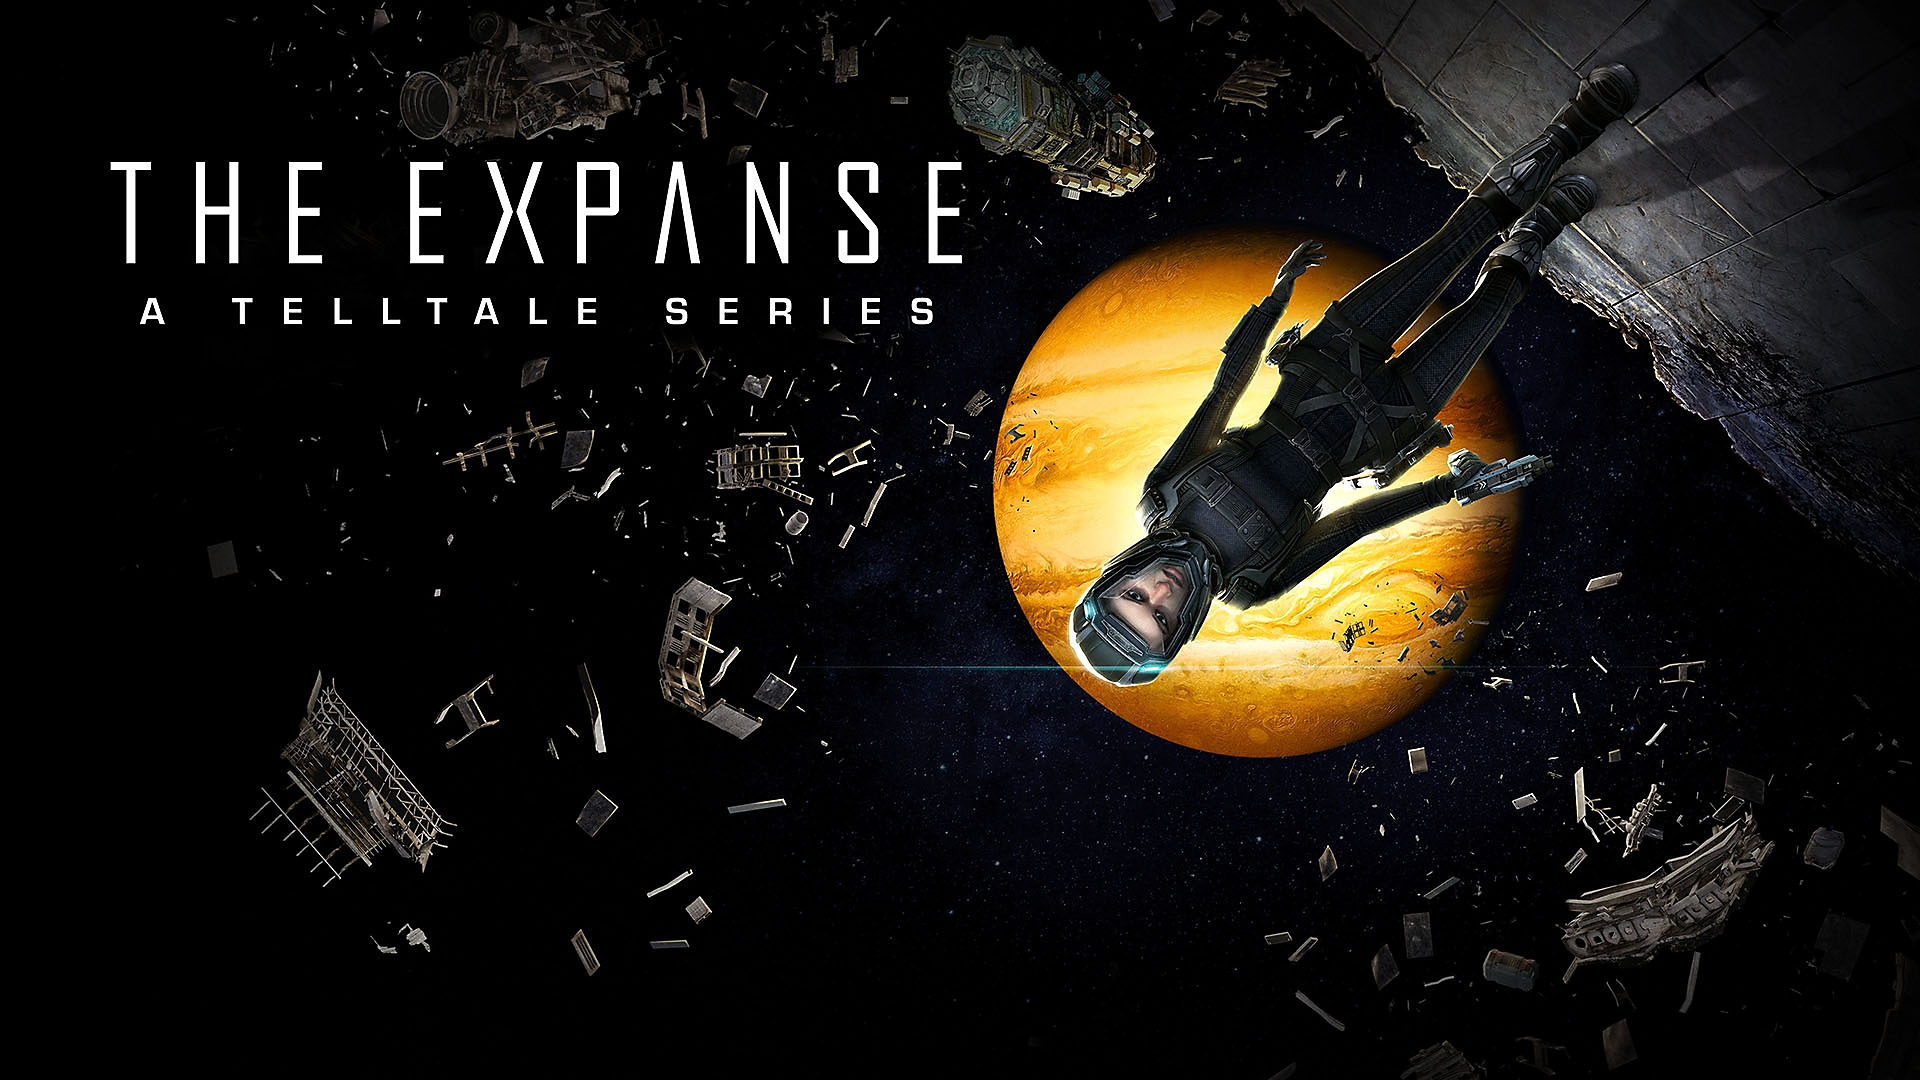 The Expanse: A Telltale Series - Bande-annonce de lancement